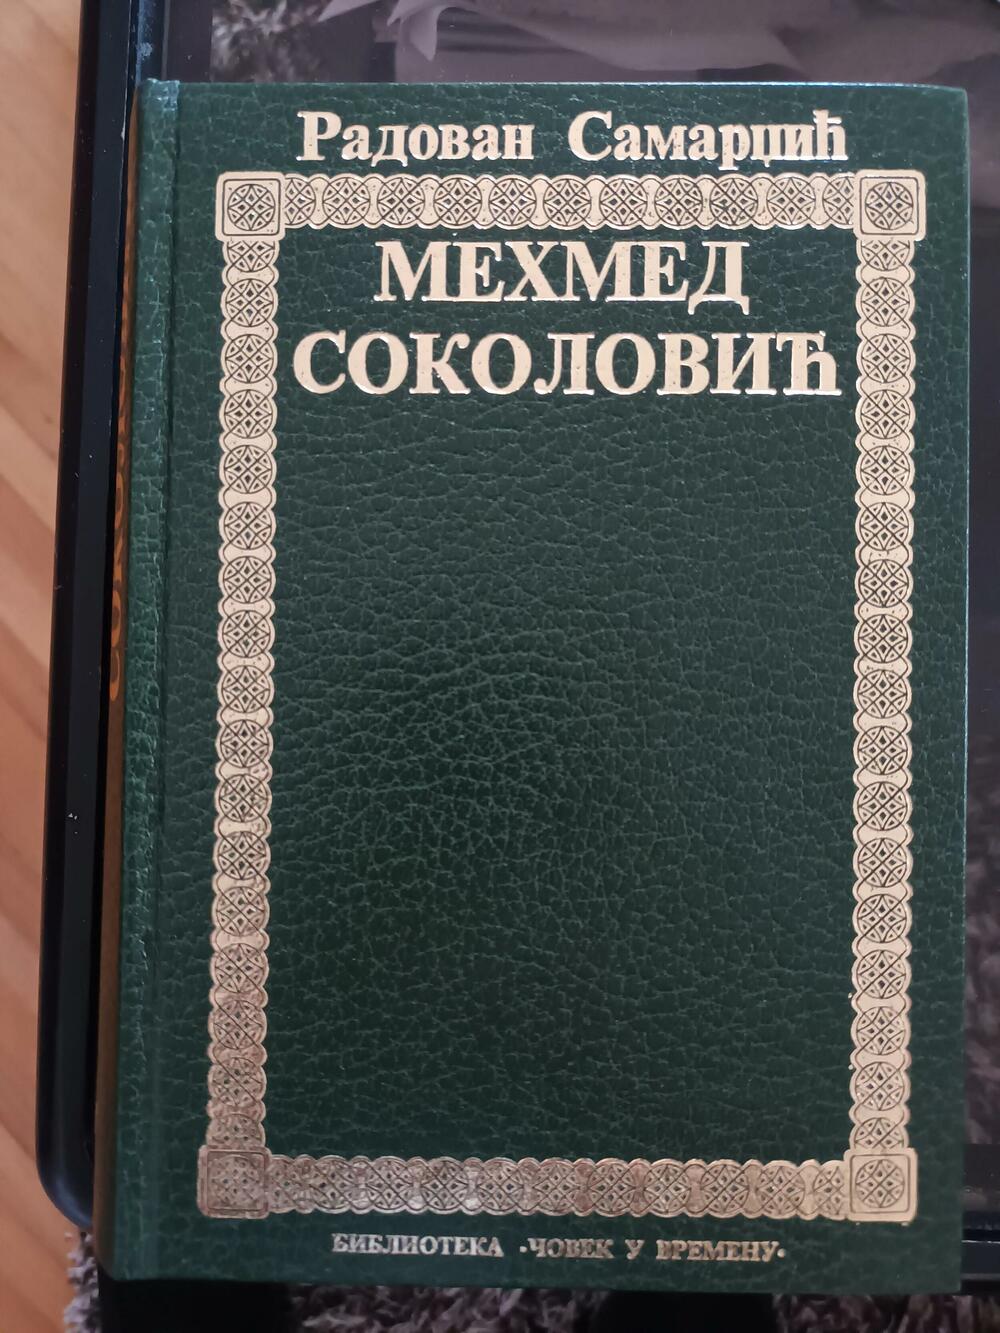 Slavna knjiga akademika Samardžića